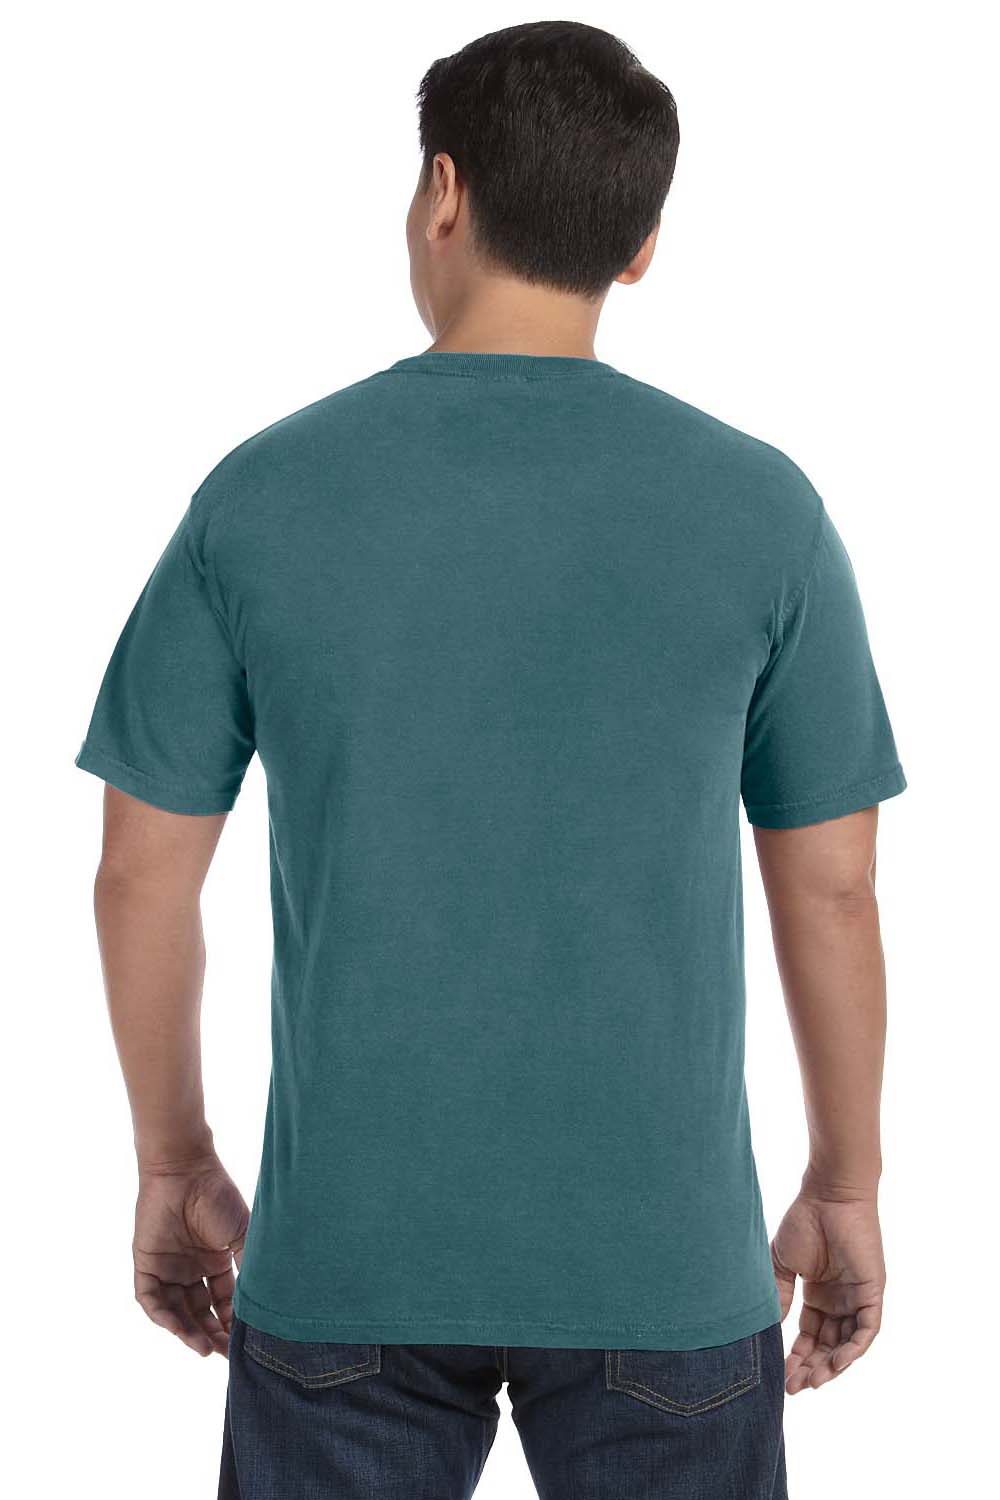 Comfort Colors C1717 Mens Short Sleeve Crewneck T-Shirt Emerald Green Back